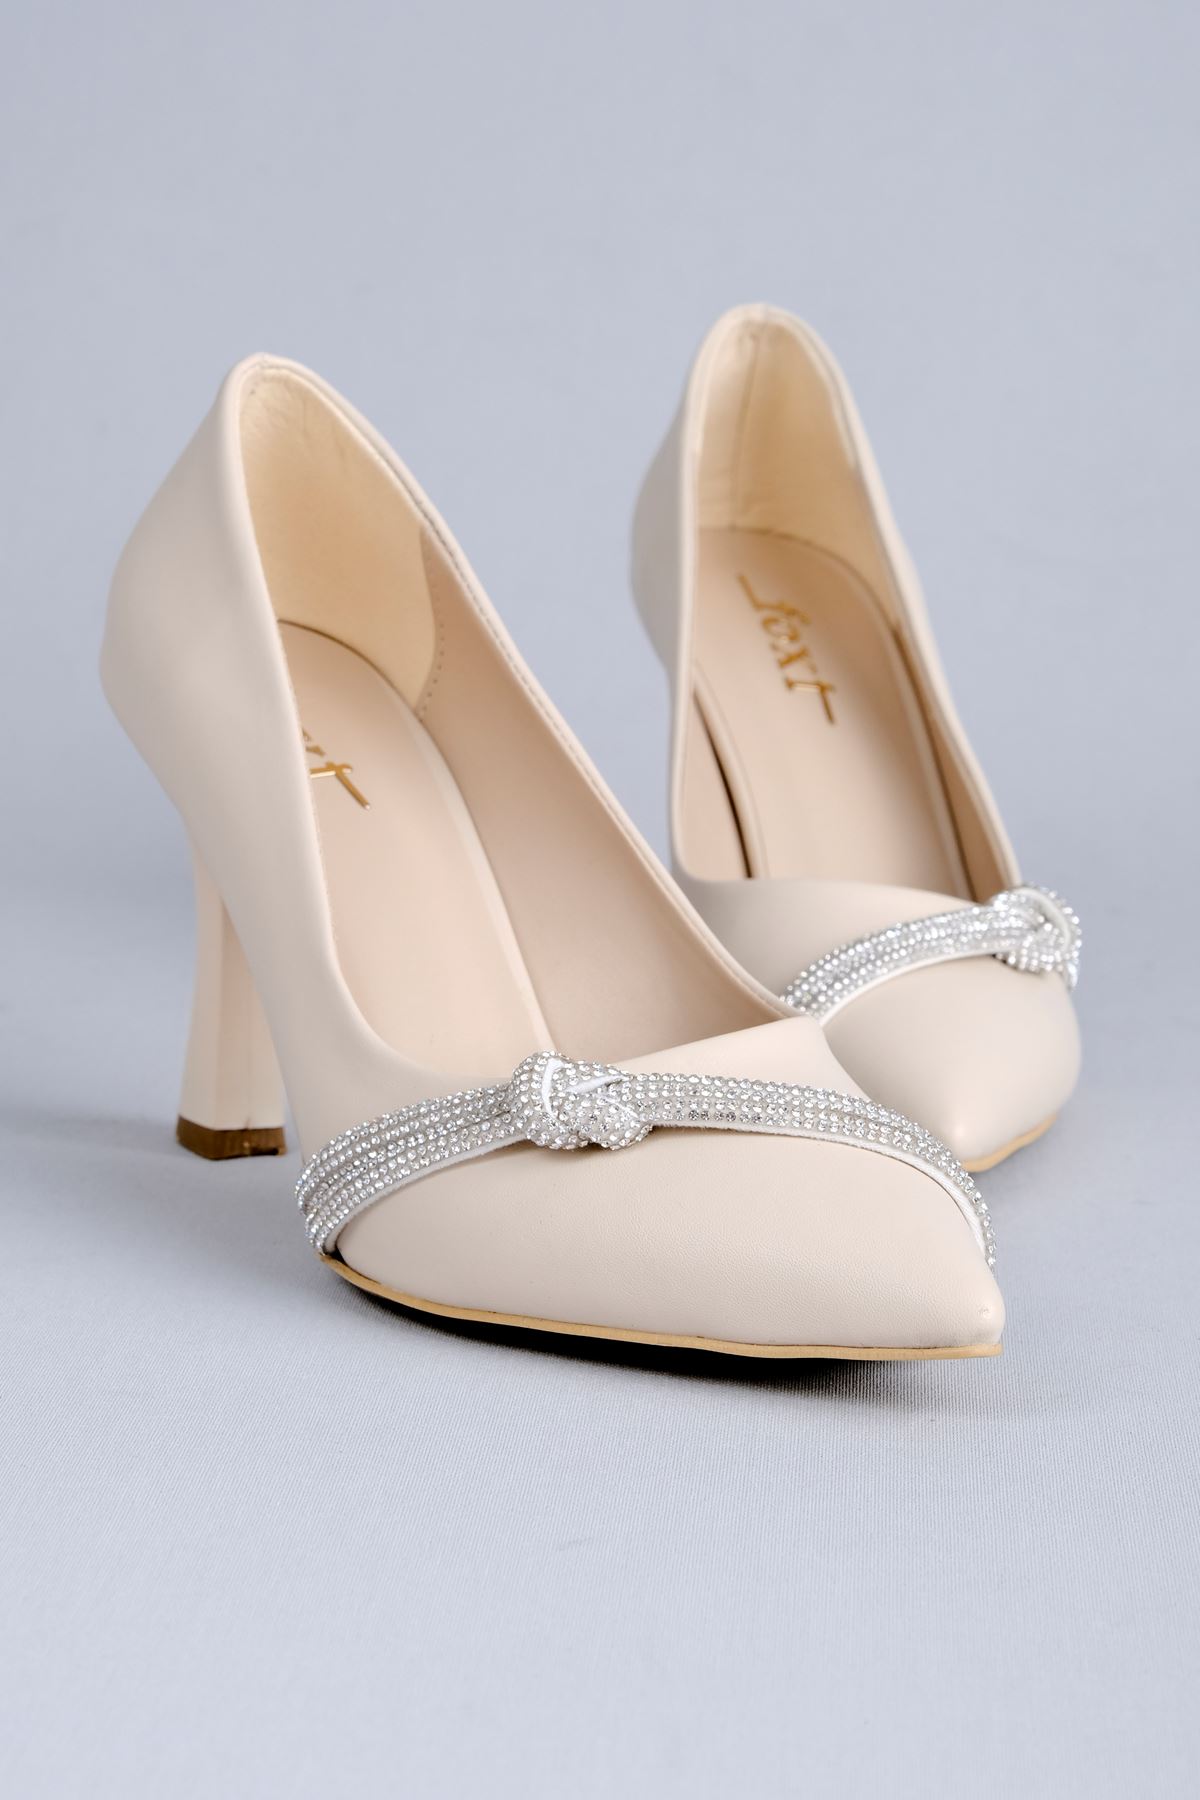 Lavender Kadın Topuklu Ayakkabı Düğüm Taşlı-Krem